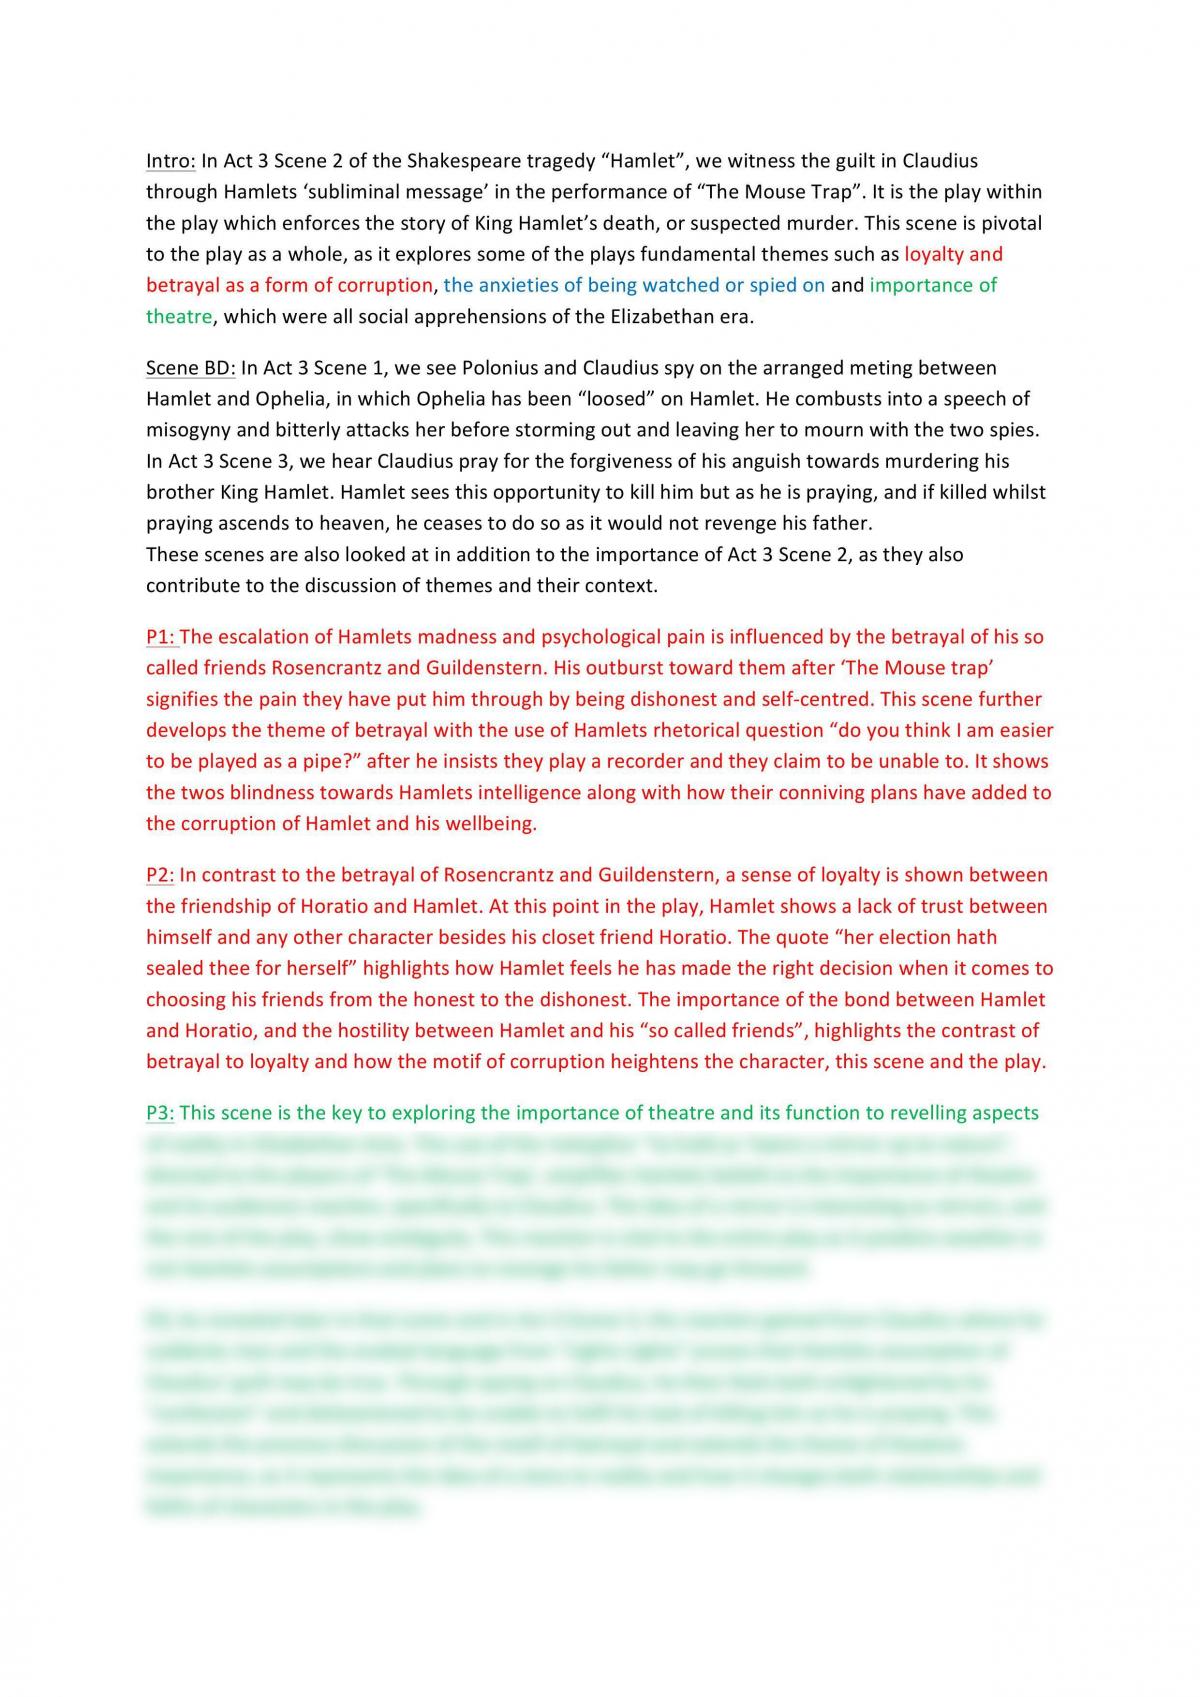 hamlet essay pdf grade 12